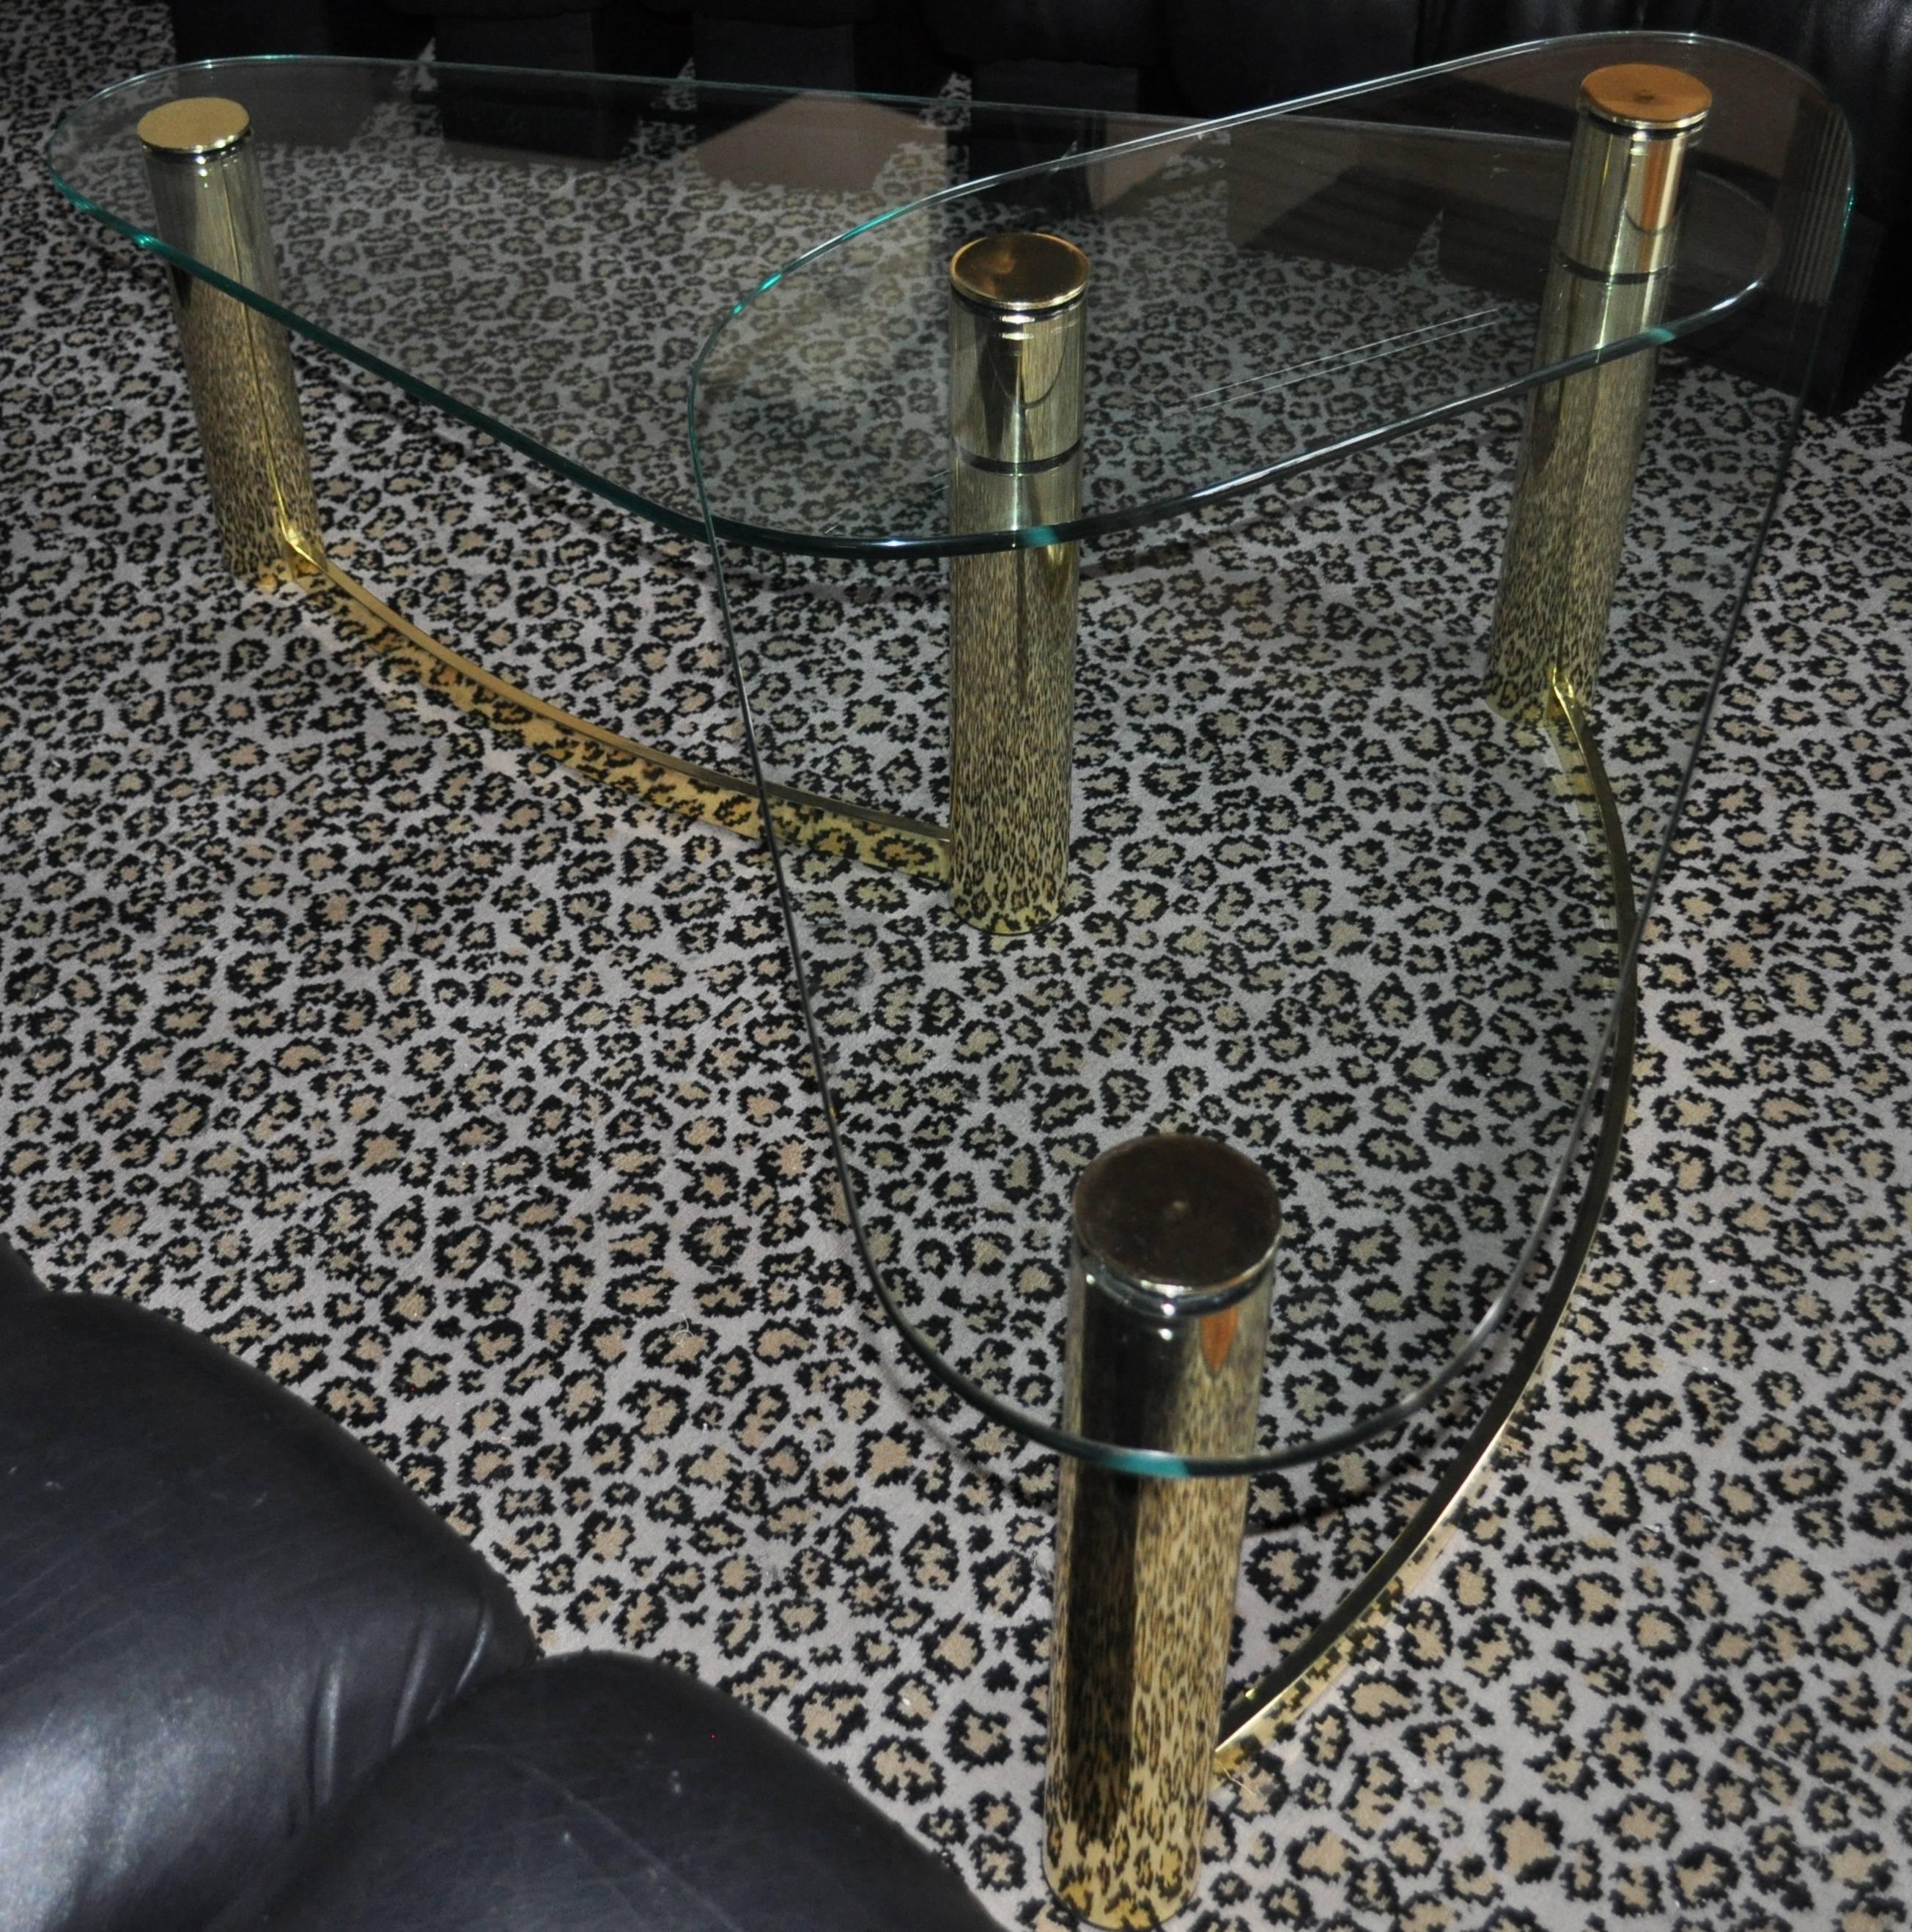 Table basse sculpturale à deux niveaux, en tube de laiton et verre, de style Mid-Century Modern. Cette table de cocktail en forme de boomerang est le style de la collection Pace.

Les deux plateaux en verre fixes sont de la même taille.  Chaque